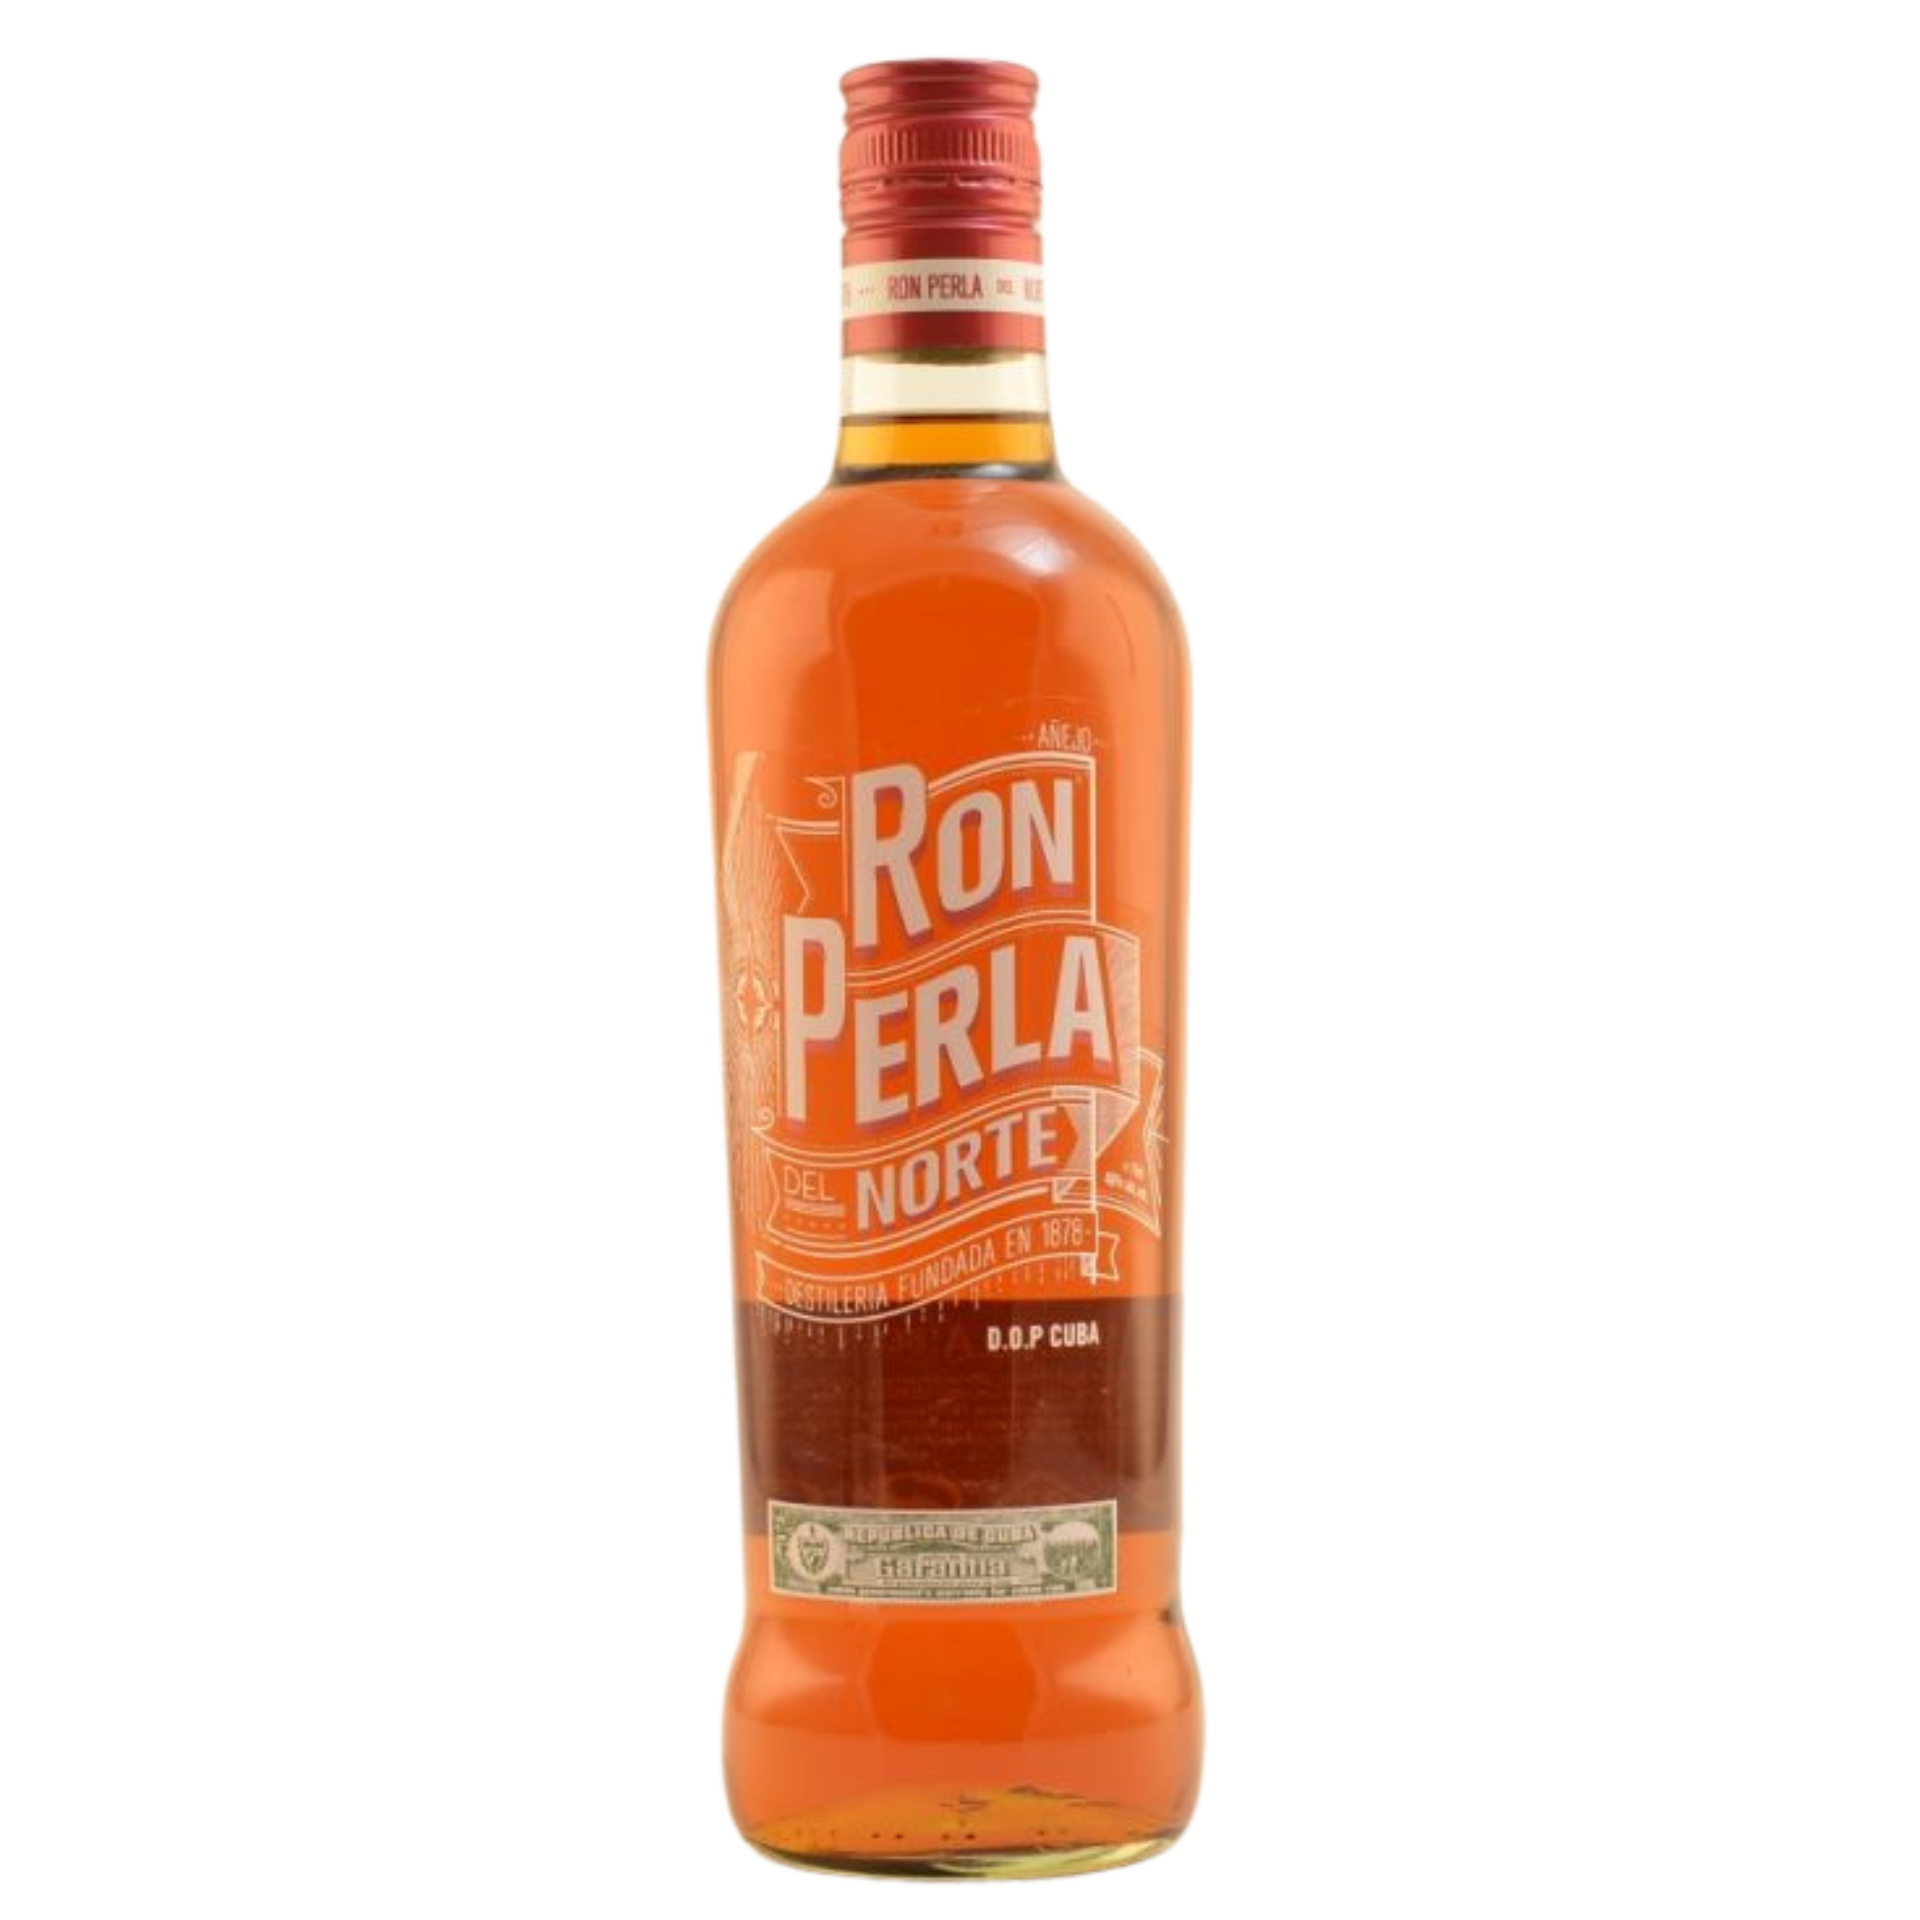 Ron Perla del Norte Anejo Rum 40% 0,7l